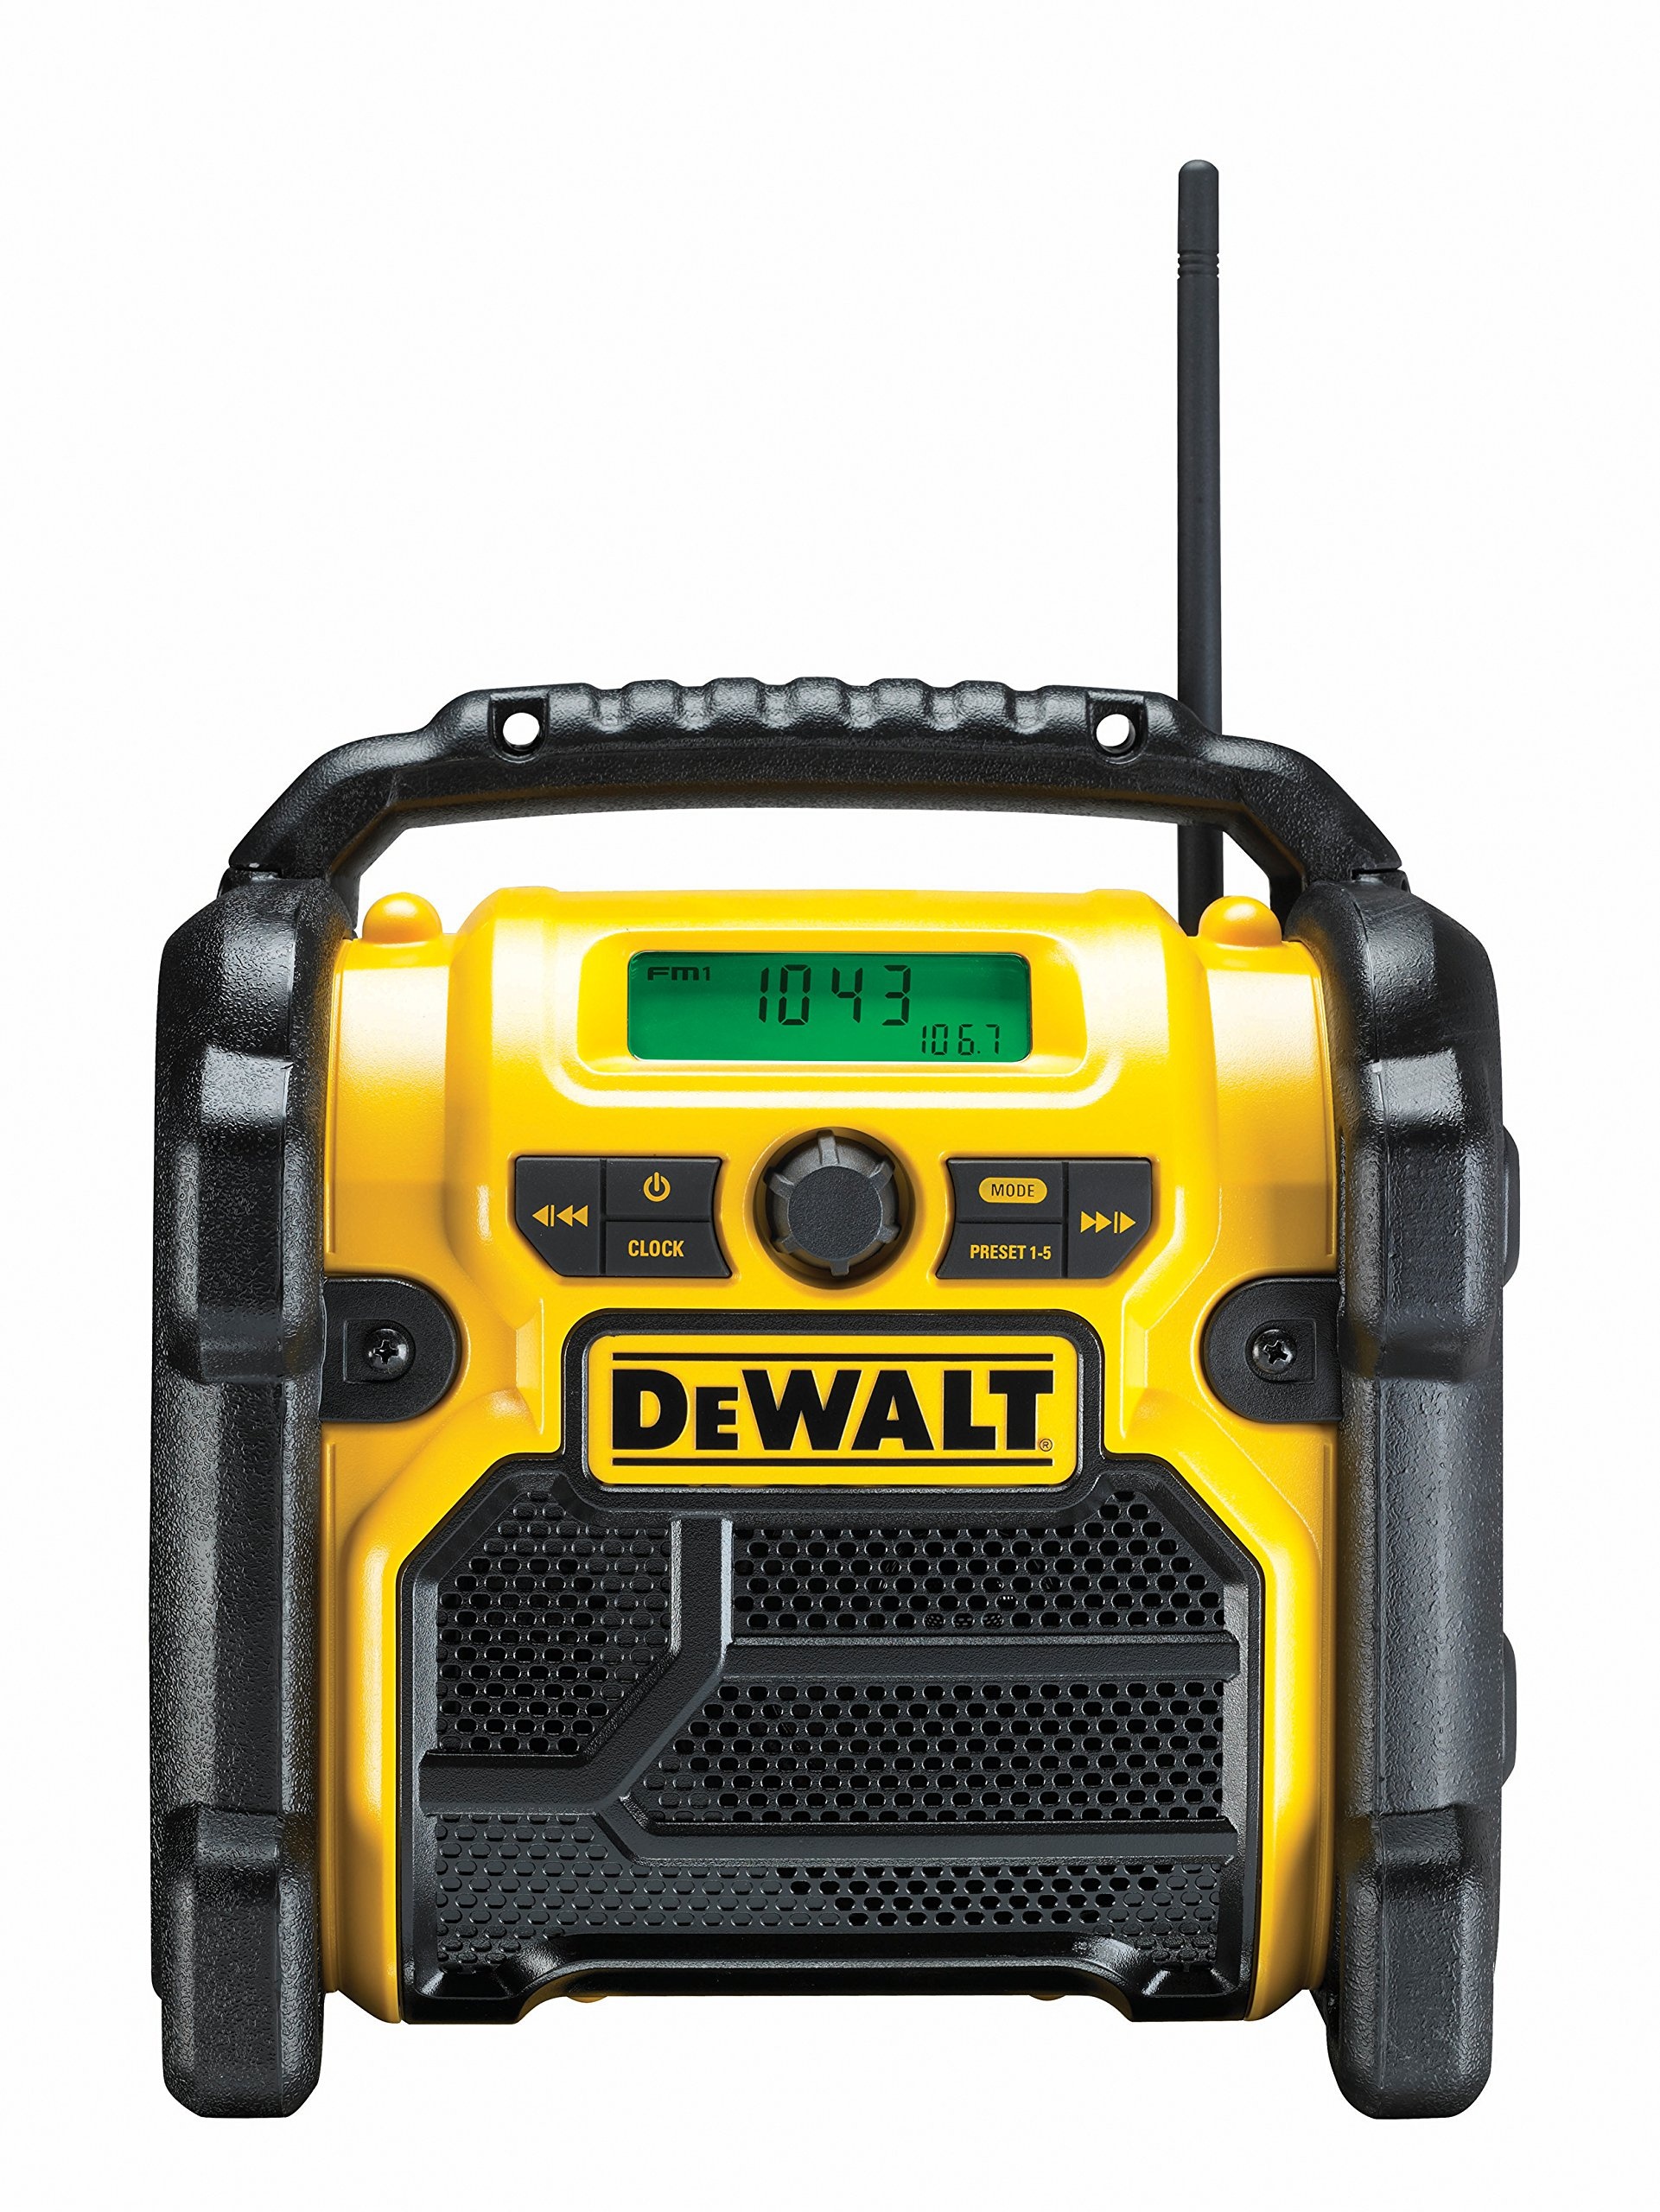 DEWALT Baustellenradio DCR019 – 2in1 Akku Radio & Netz Radio mit AUX-Eingang, robustem Gehäuse, Kabelaufbewahrung, flexibler Antenne und Überrollbügel – Tragbares Radio zum Empfang analoger Signale